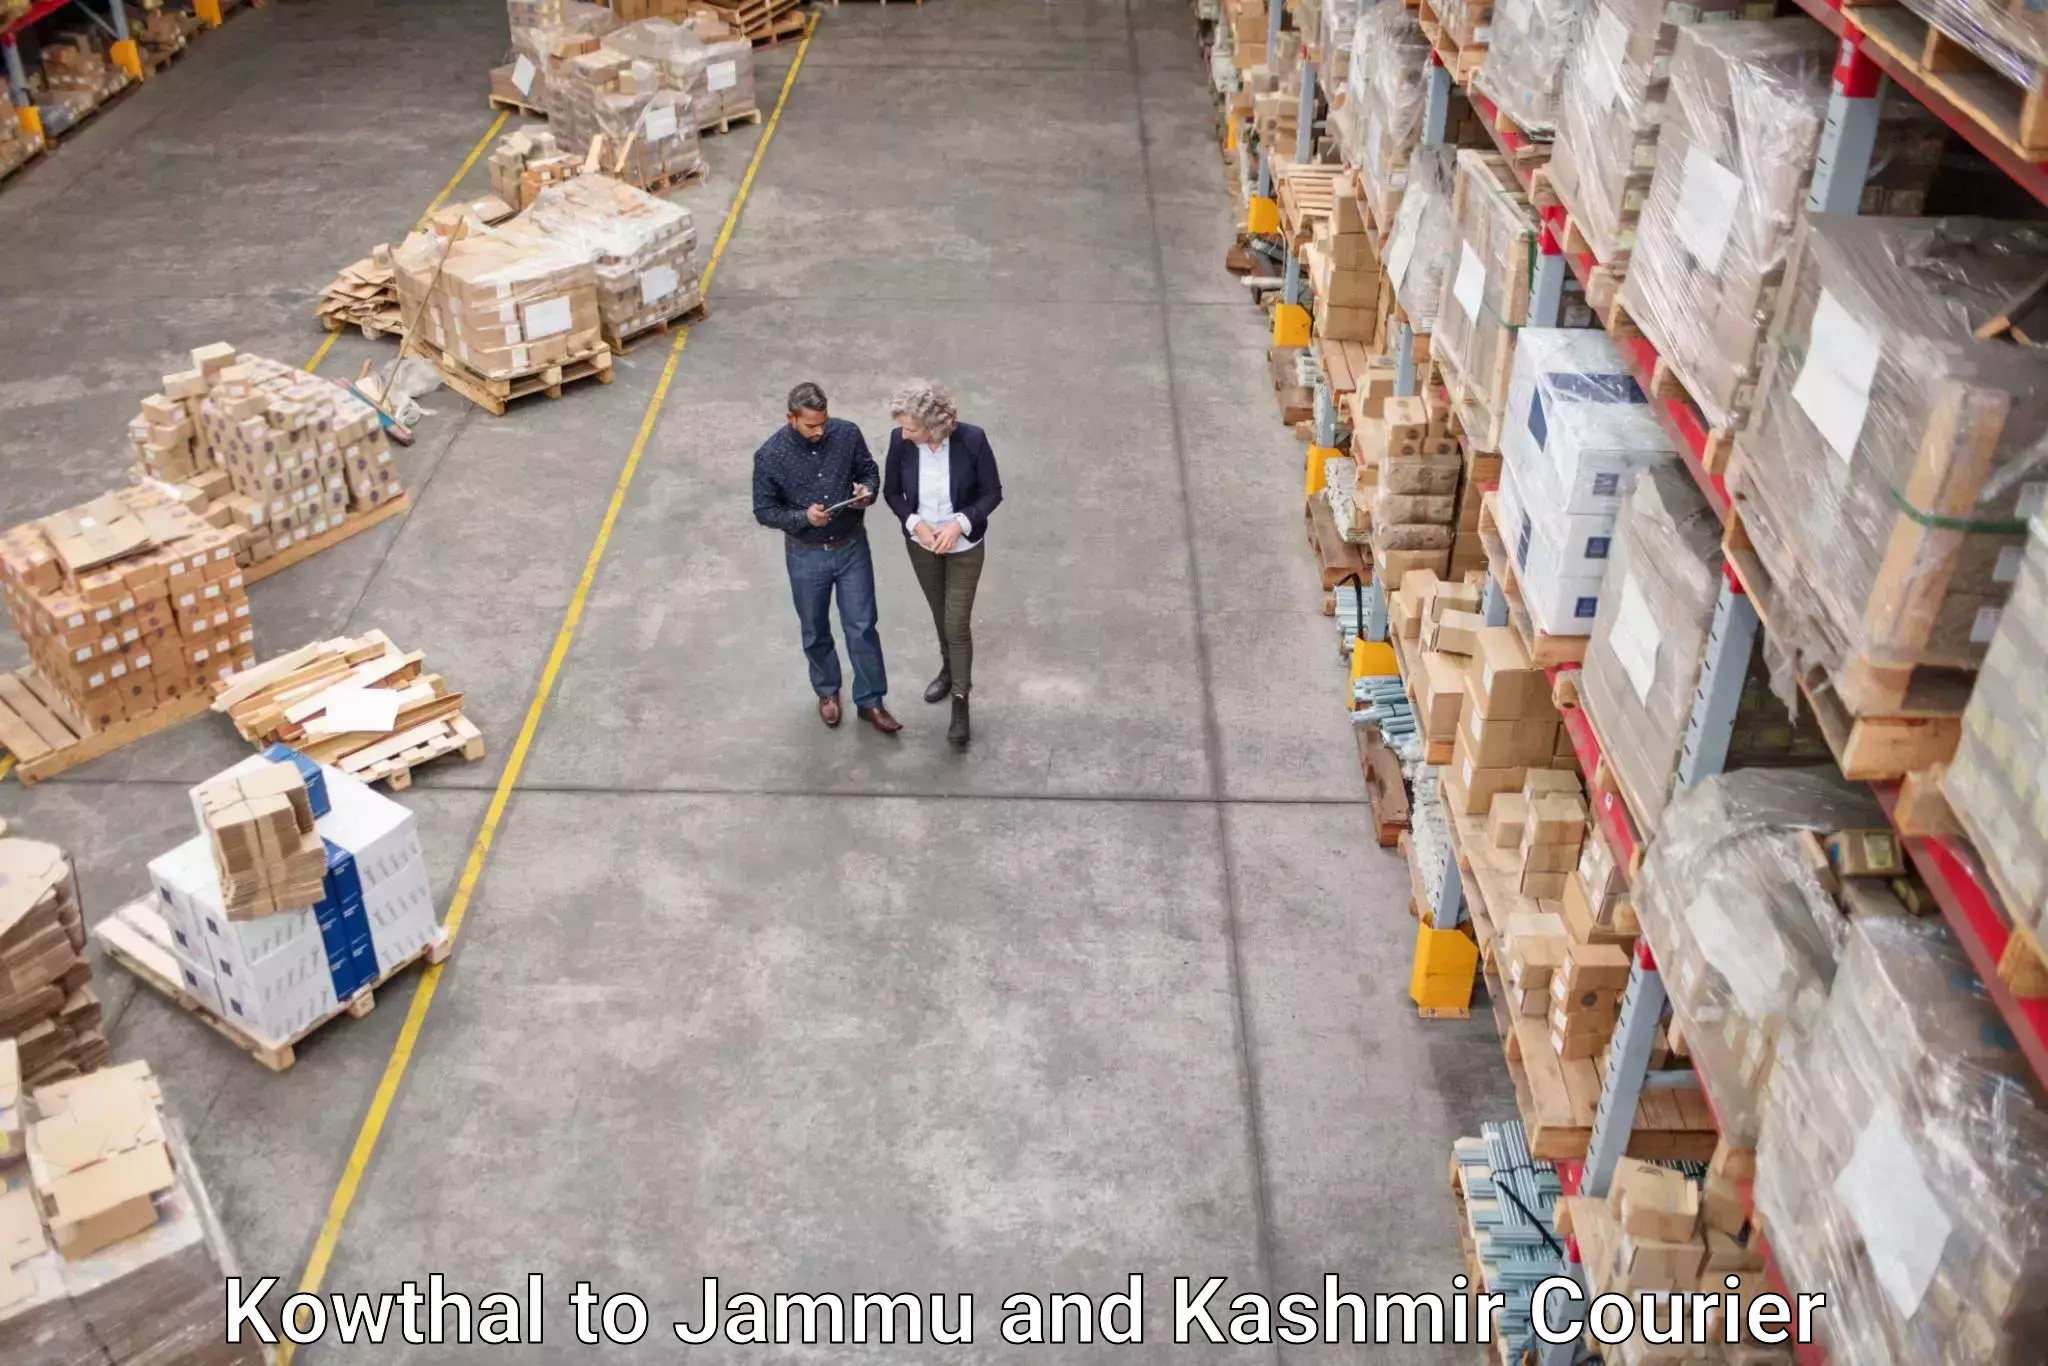 Doorstep delivery service Kowthal to Jammu